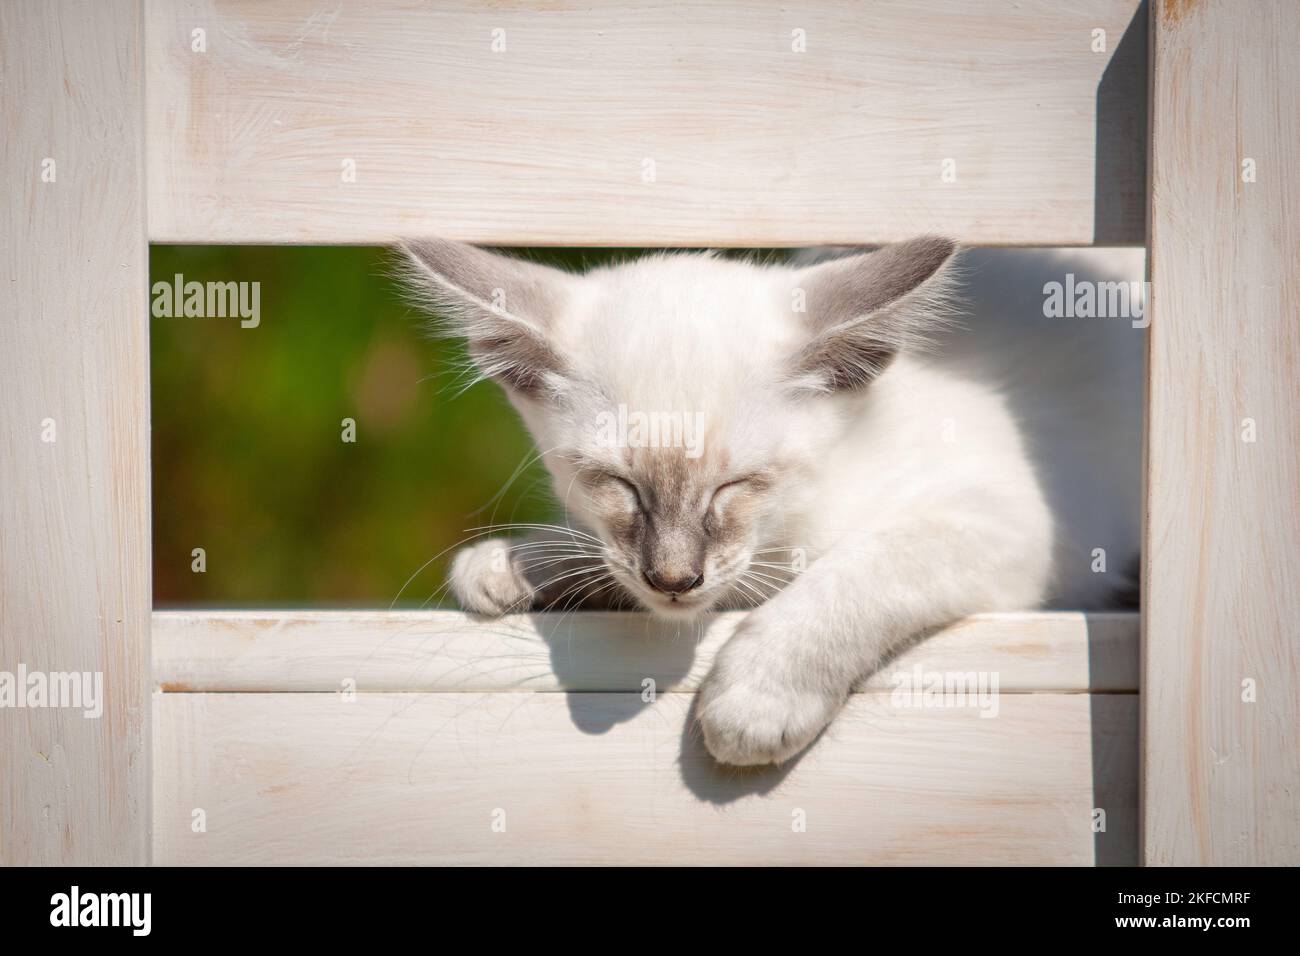 Dormir gatito balinés Foto de stock